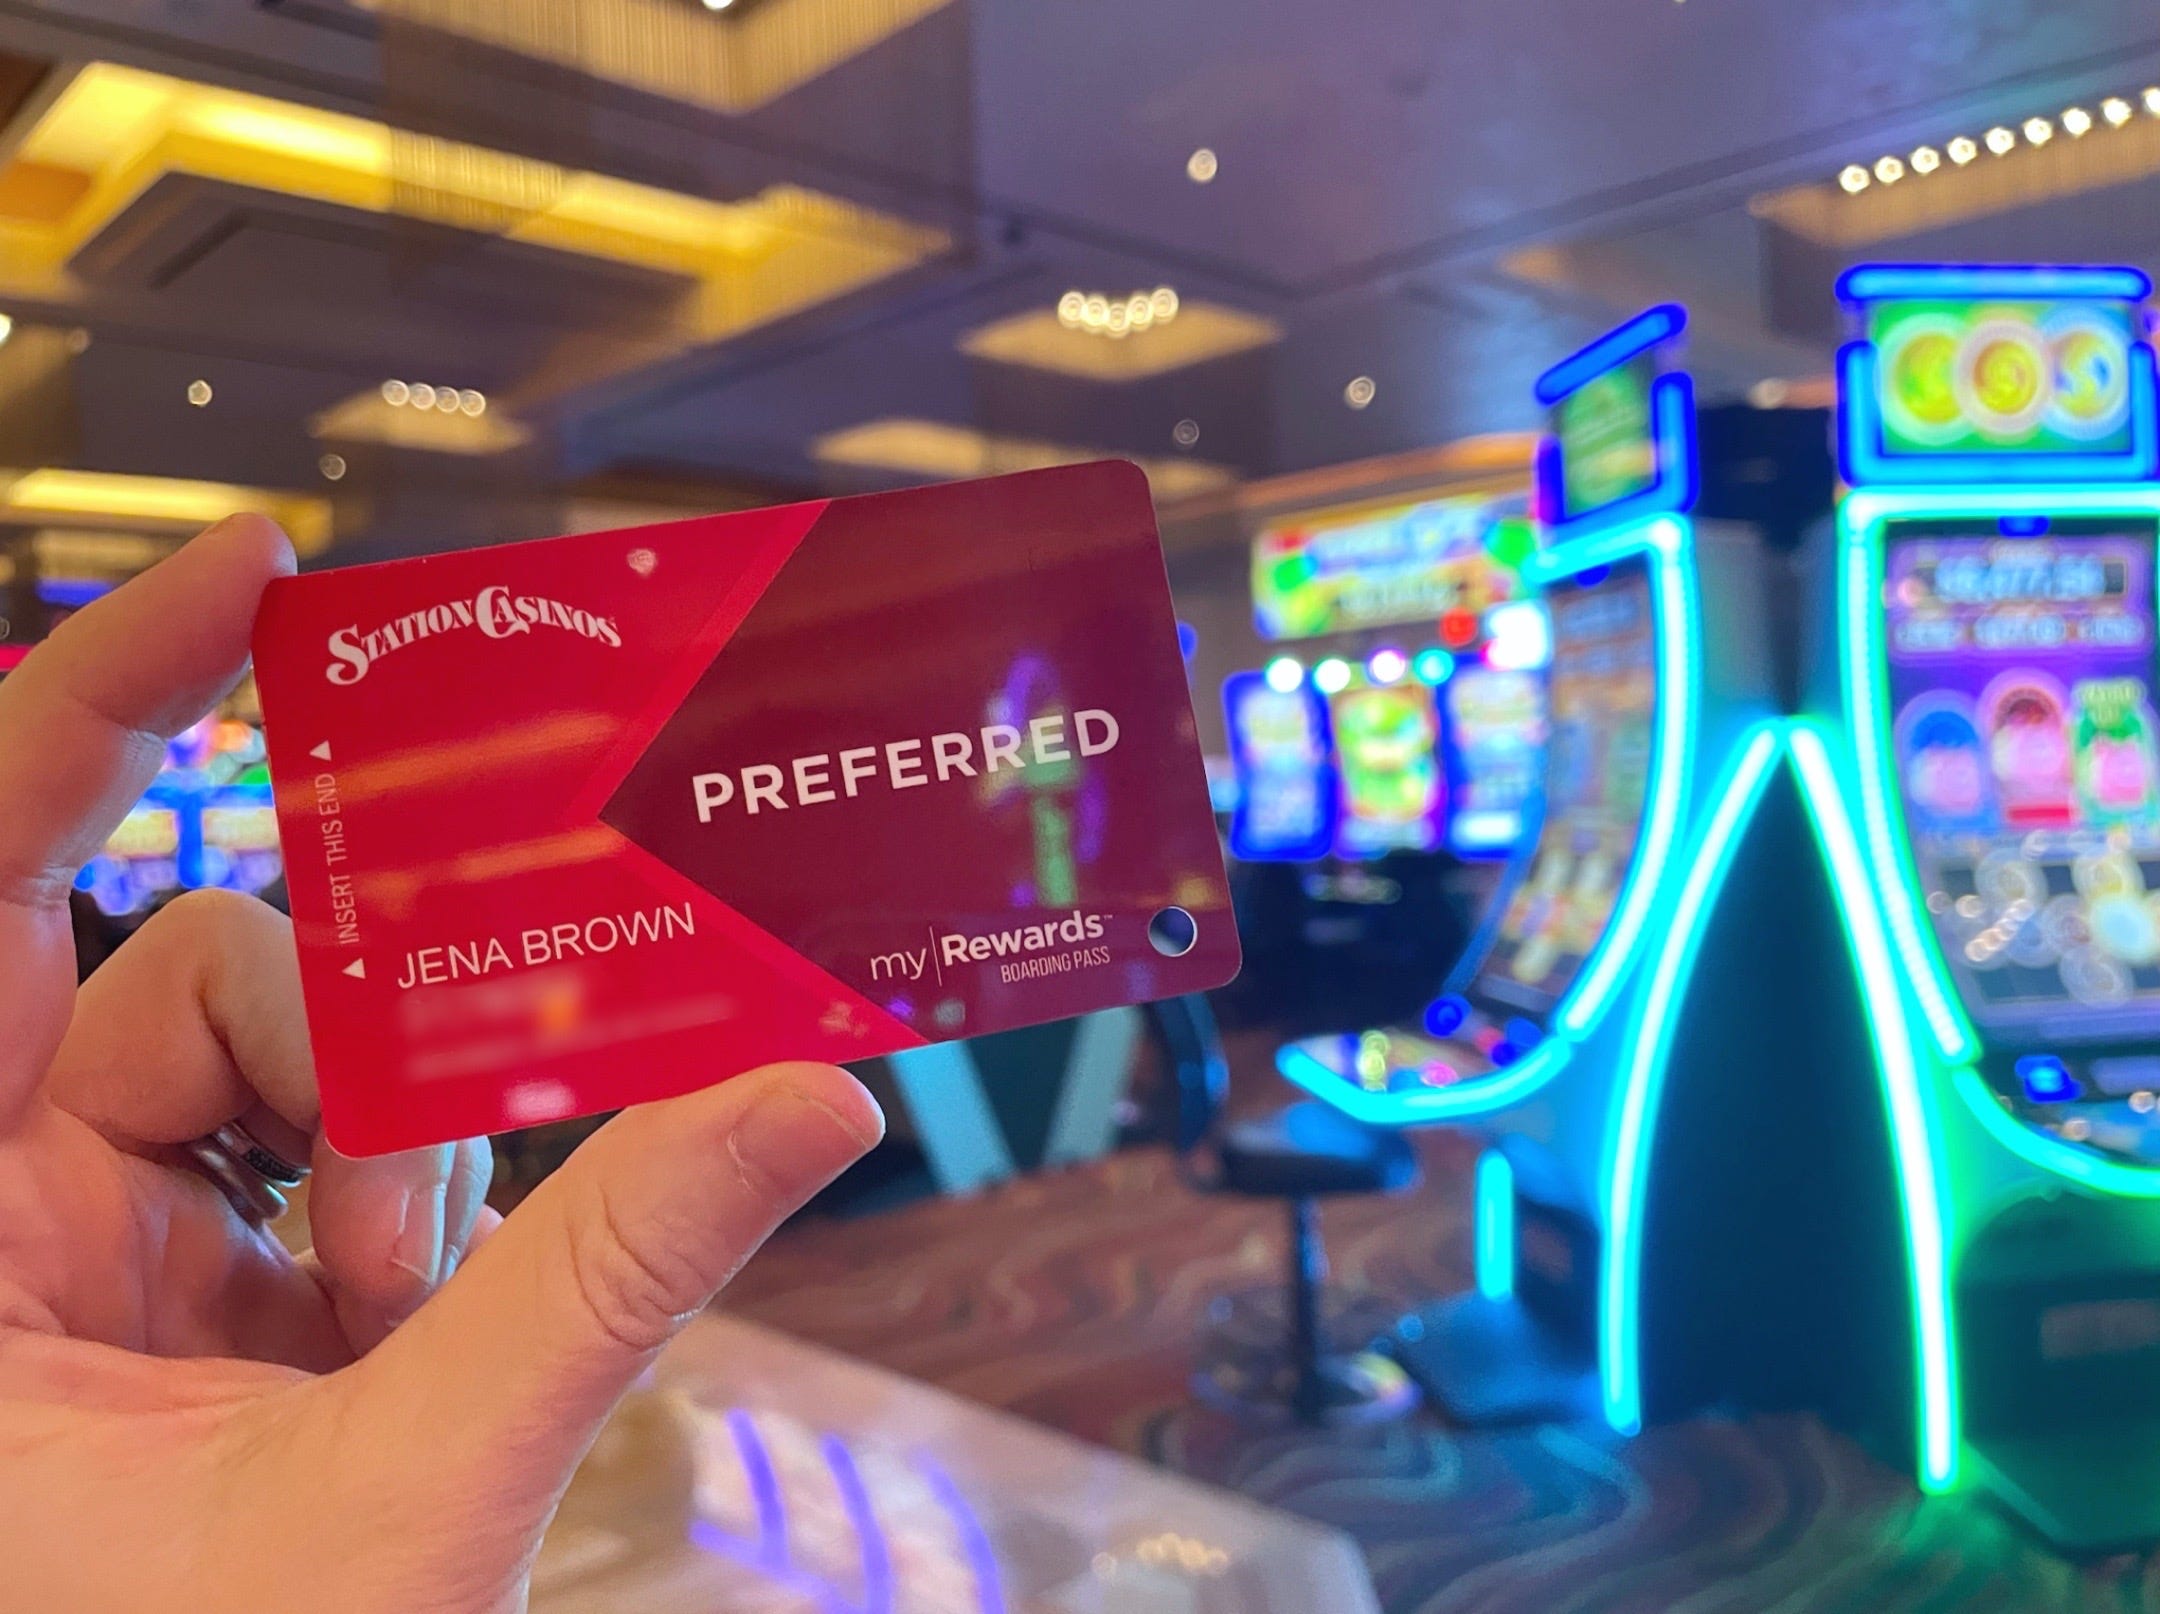 Eine Hand hält eine Prämienkarte von Station Casinos hoch, während sie in einem hell erleuchteten Raum vor einer Reihe von Casino-Automaten steht.